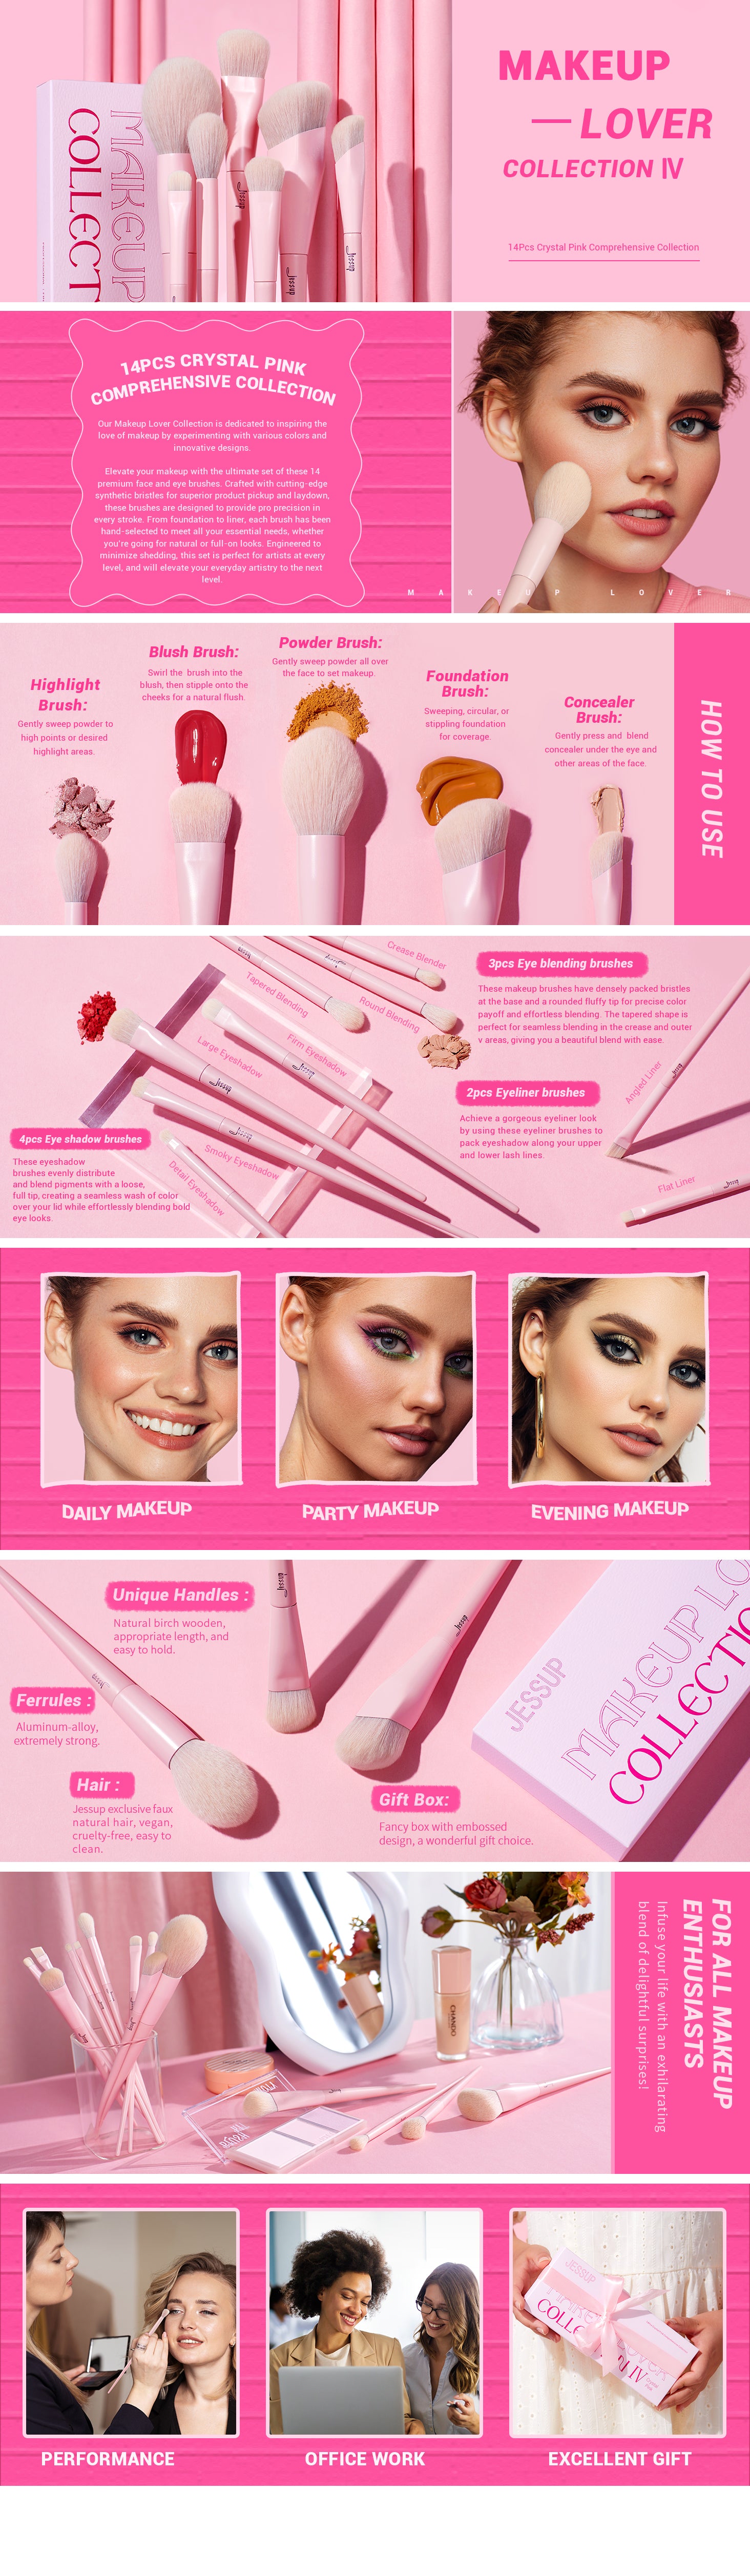 Jessup Eyeshadow Brush Set Pink Eye Makeup Brushes Concealer Brush Premium  Vegan Eyeshadow liner Blending Brush for Makeup, T496